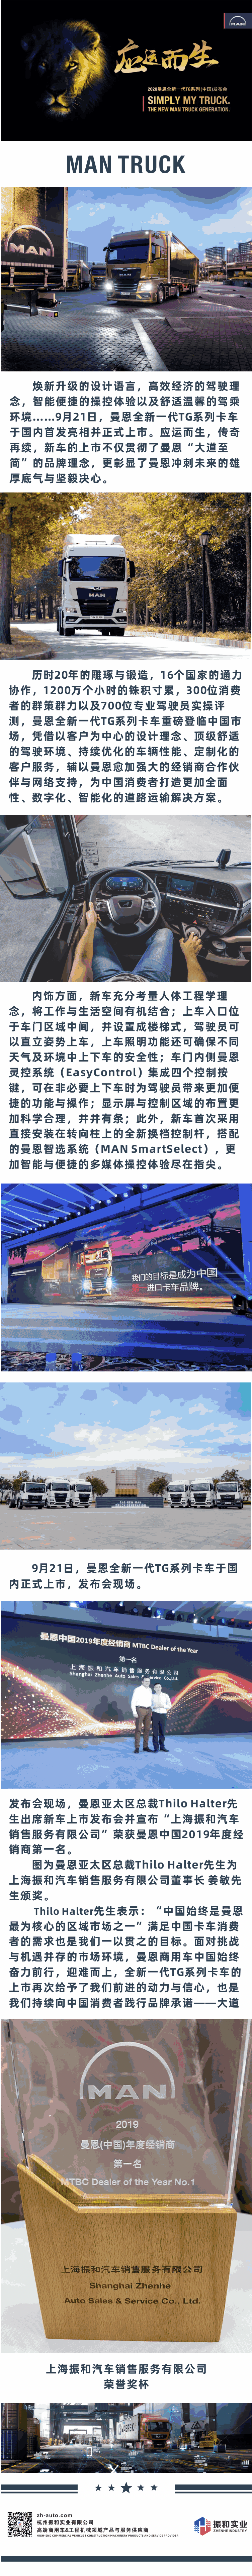 狮吼东方 应运而生 | 上海振和汽车销售服务有限公司 荣获MAN 2019年度经销商第一名